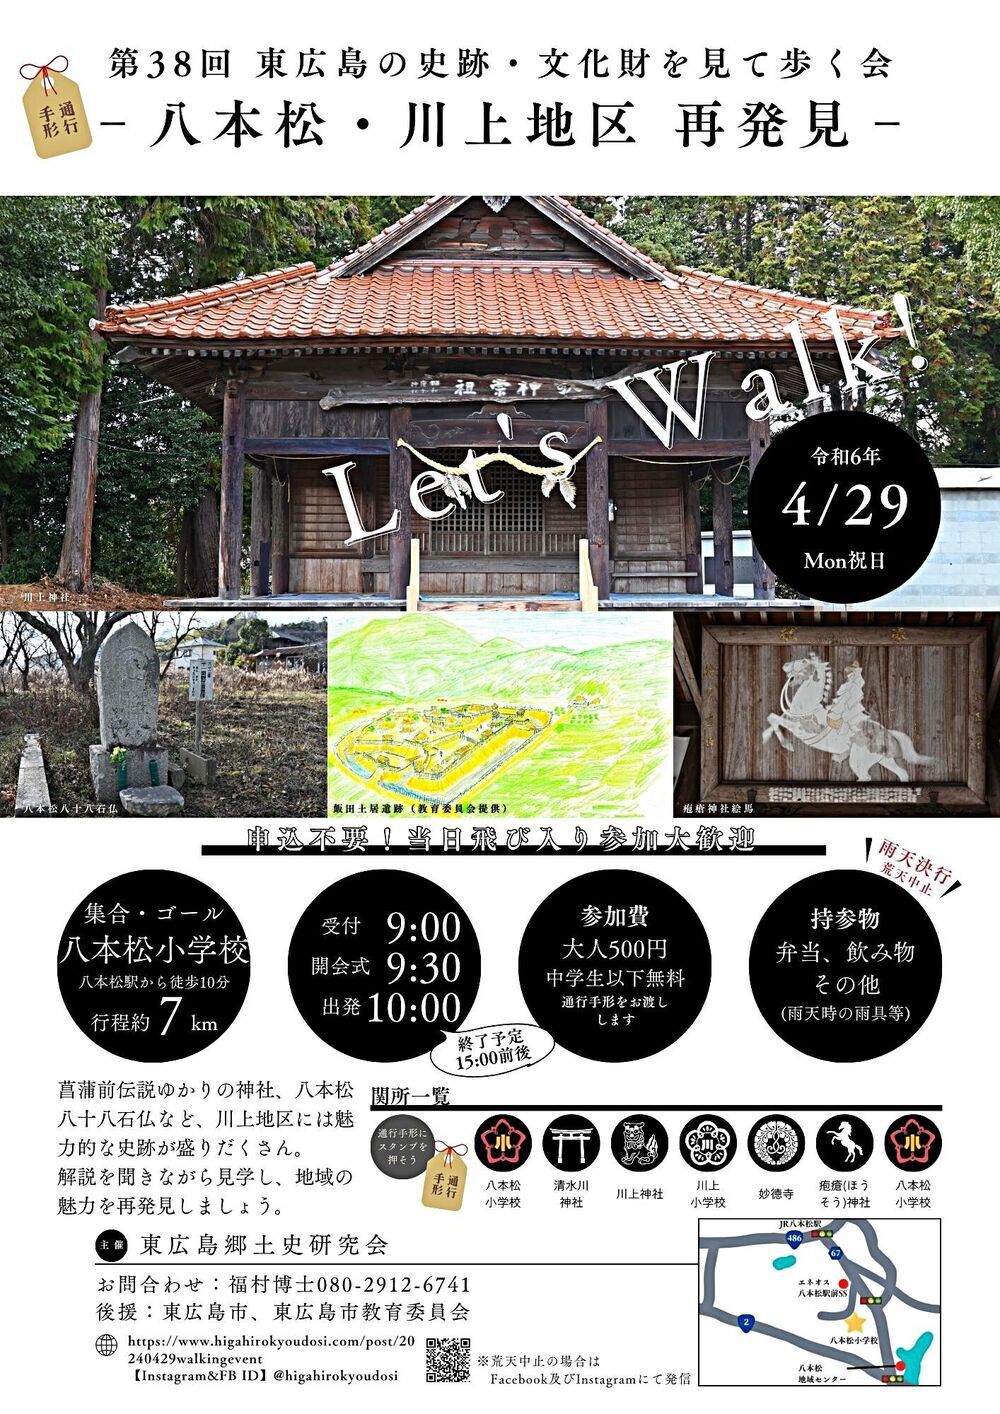 【4月29日】今年も「歩く会」を開催します【八本松町川上地区】